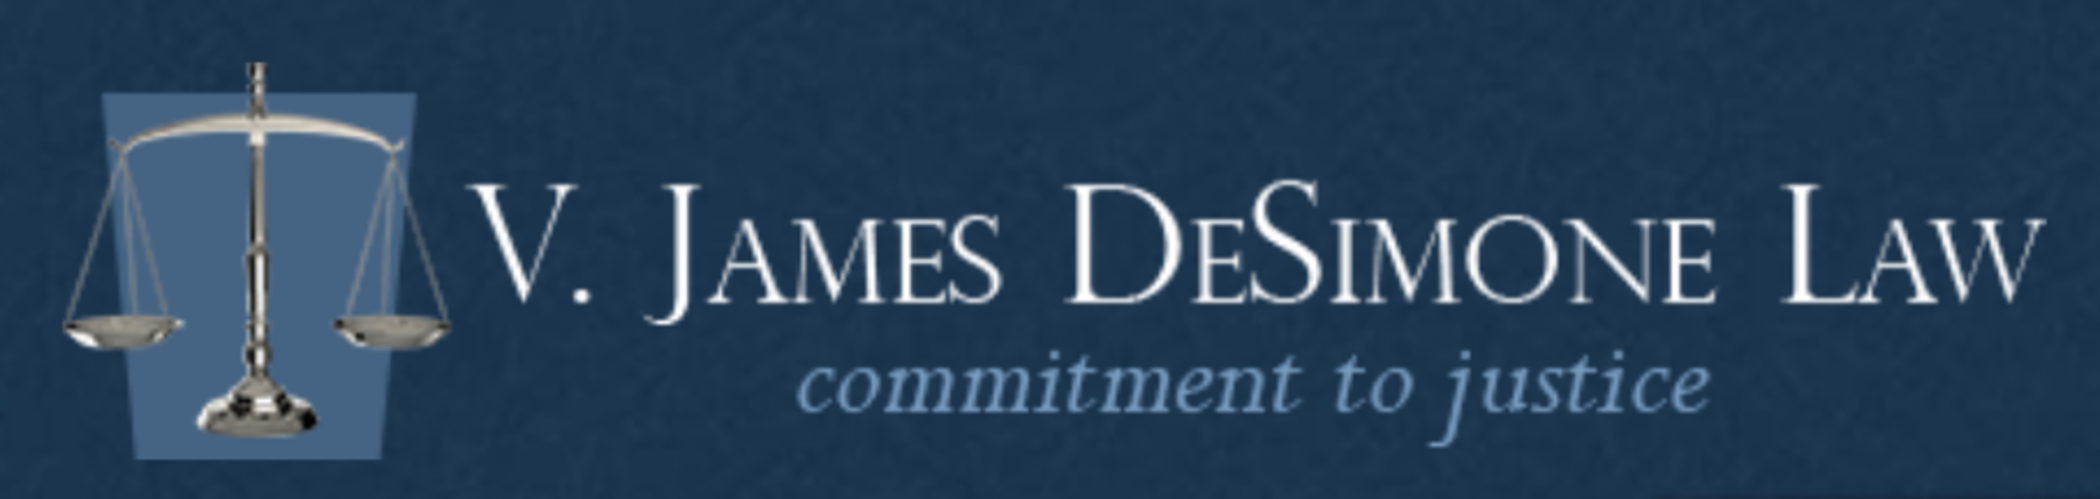 V. James DeSimone Law review